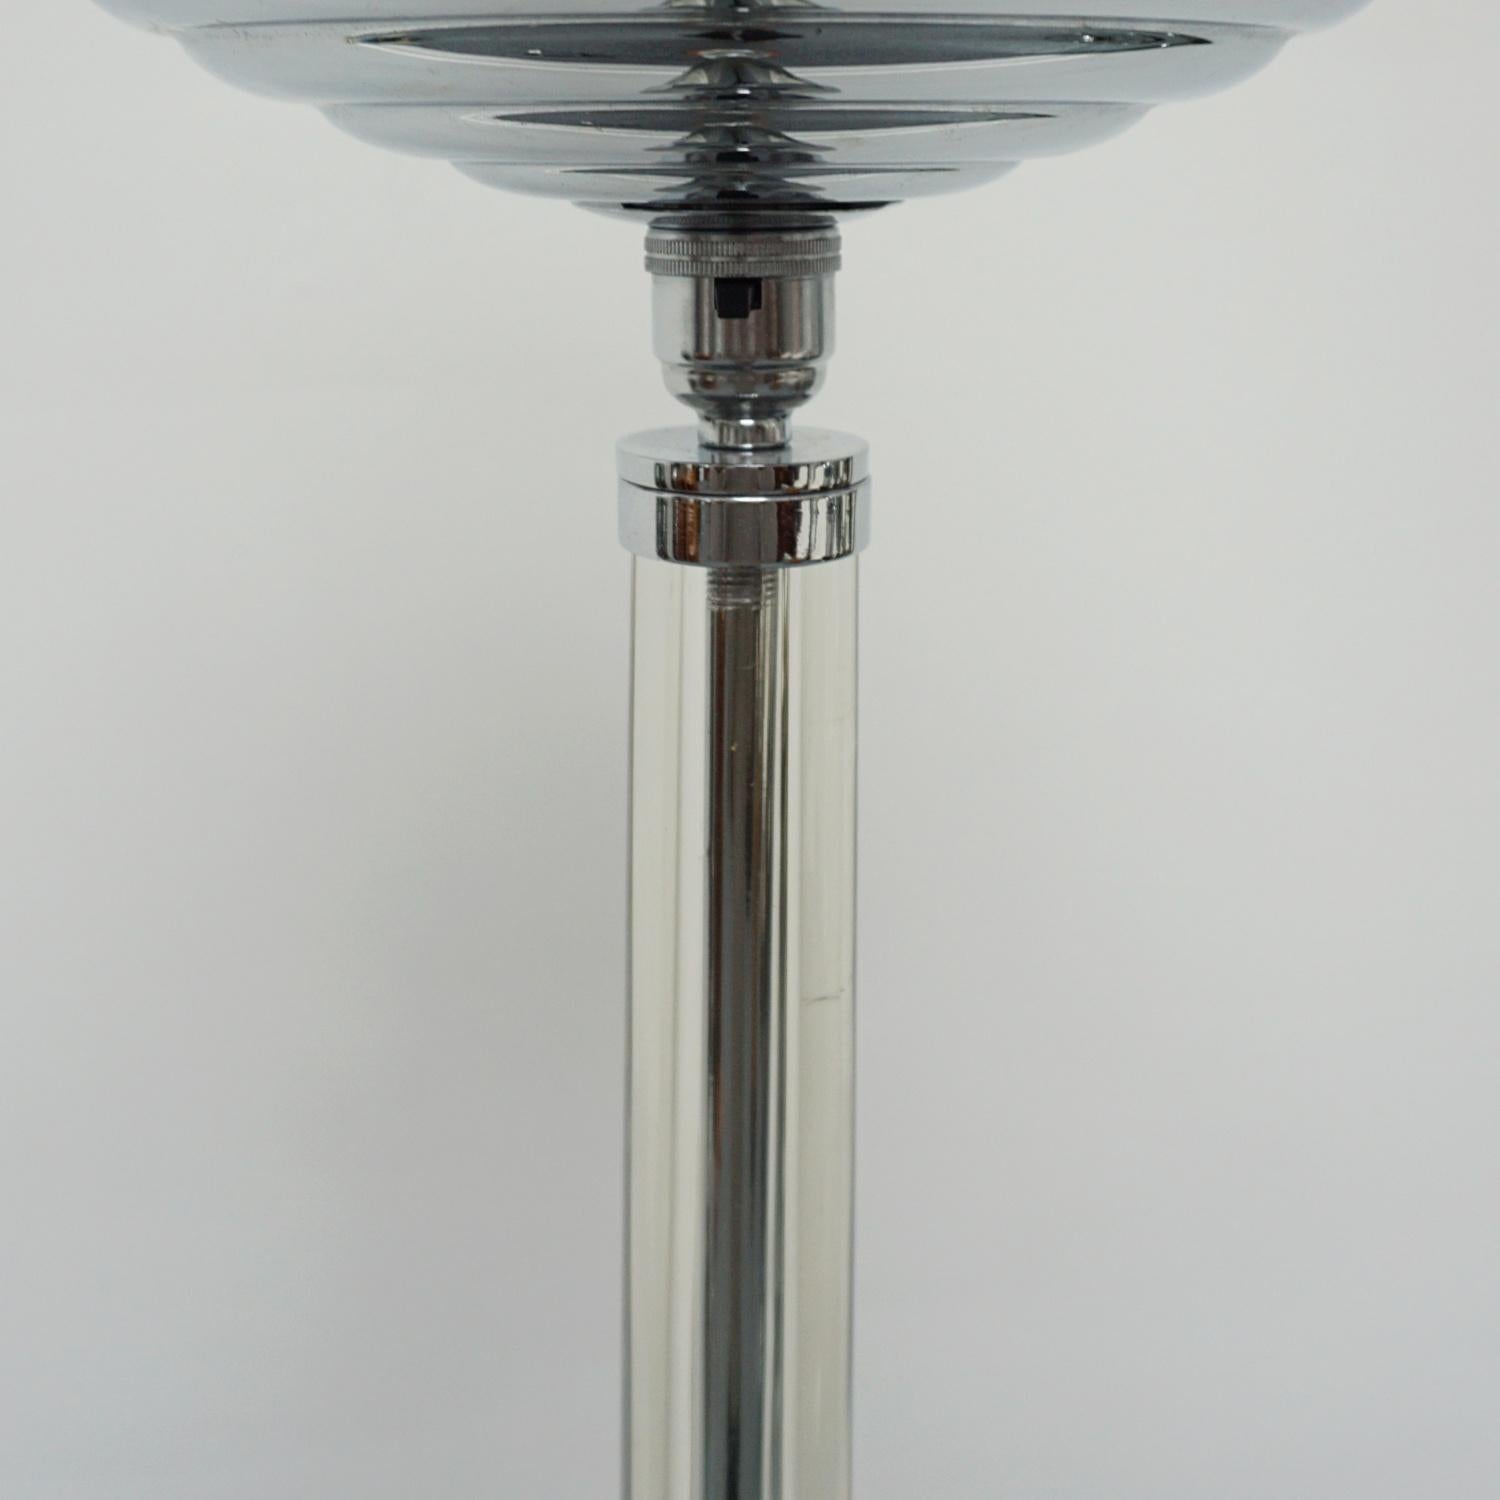 20th Century An Art Deco 'Beehive' Uplighter Floor Lamp